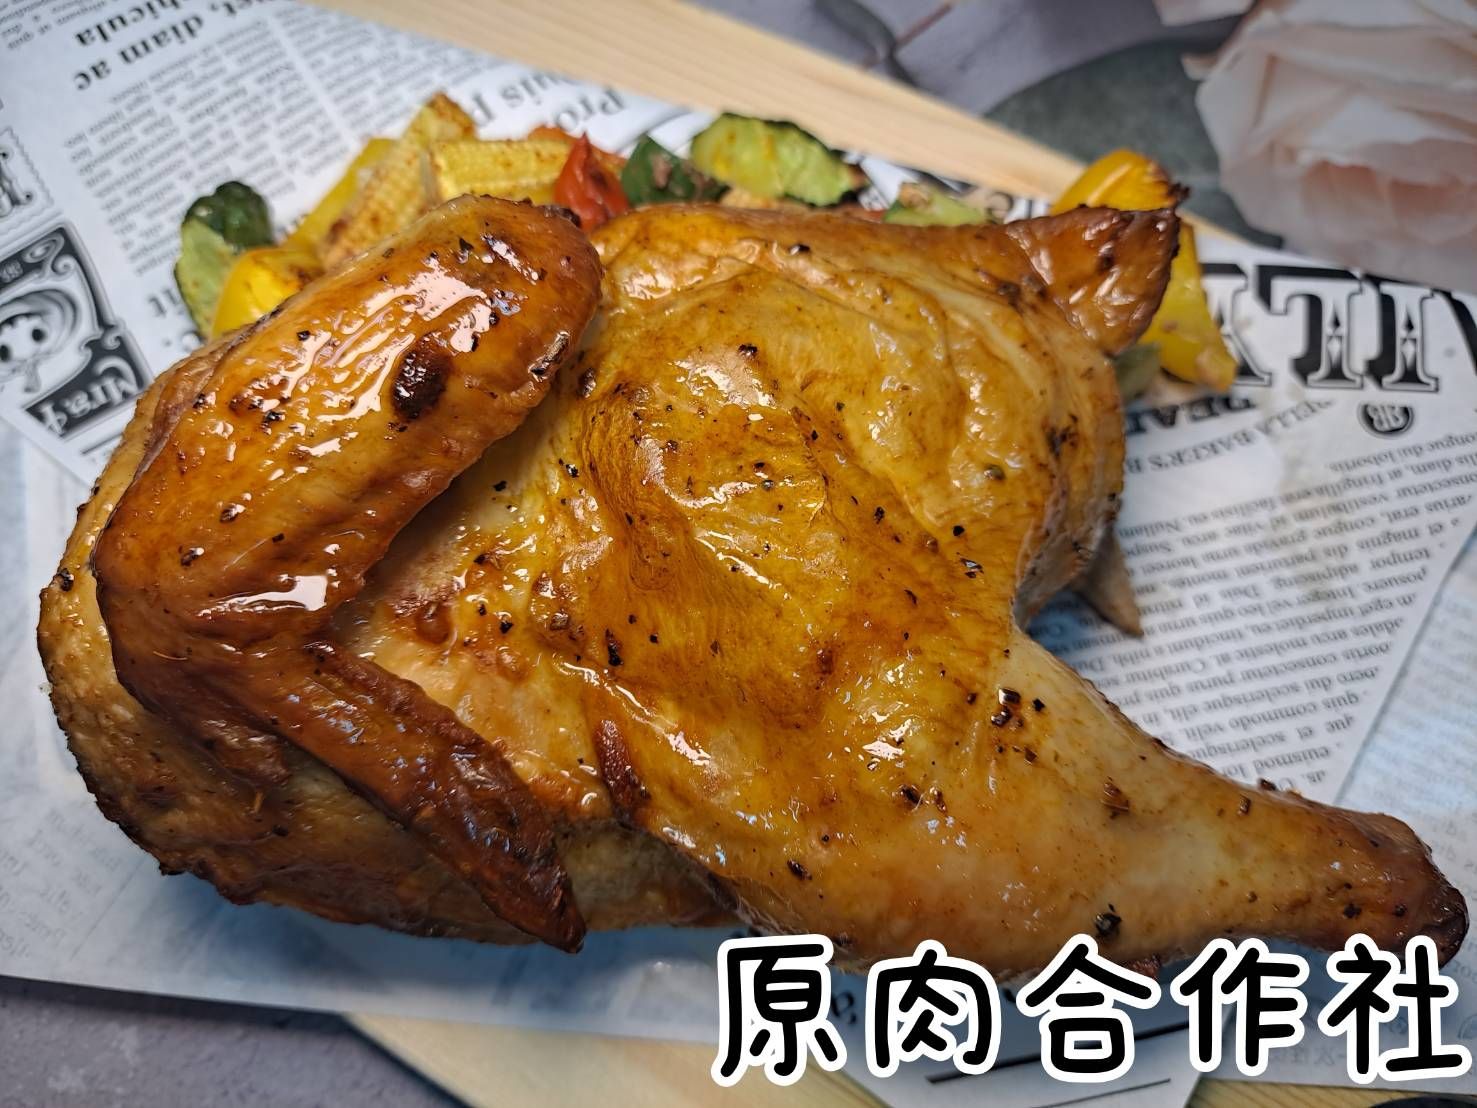 【原肉合作社】義式烤半雞